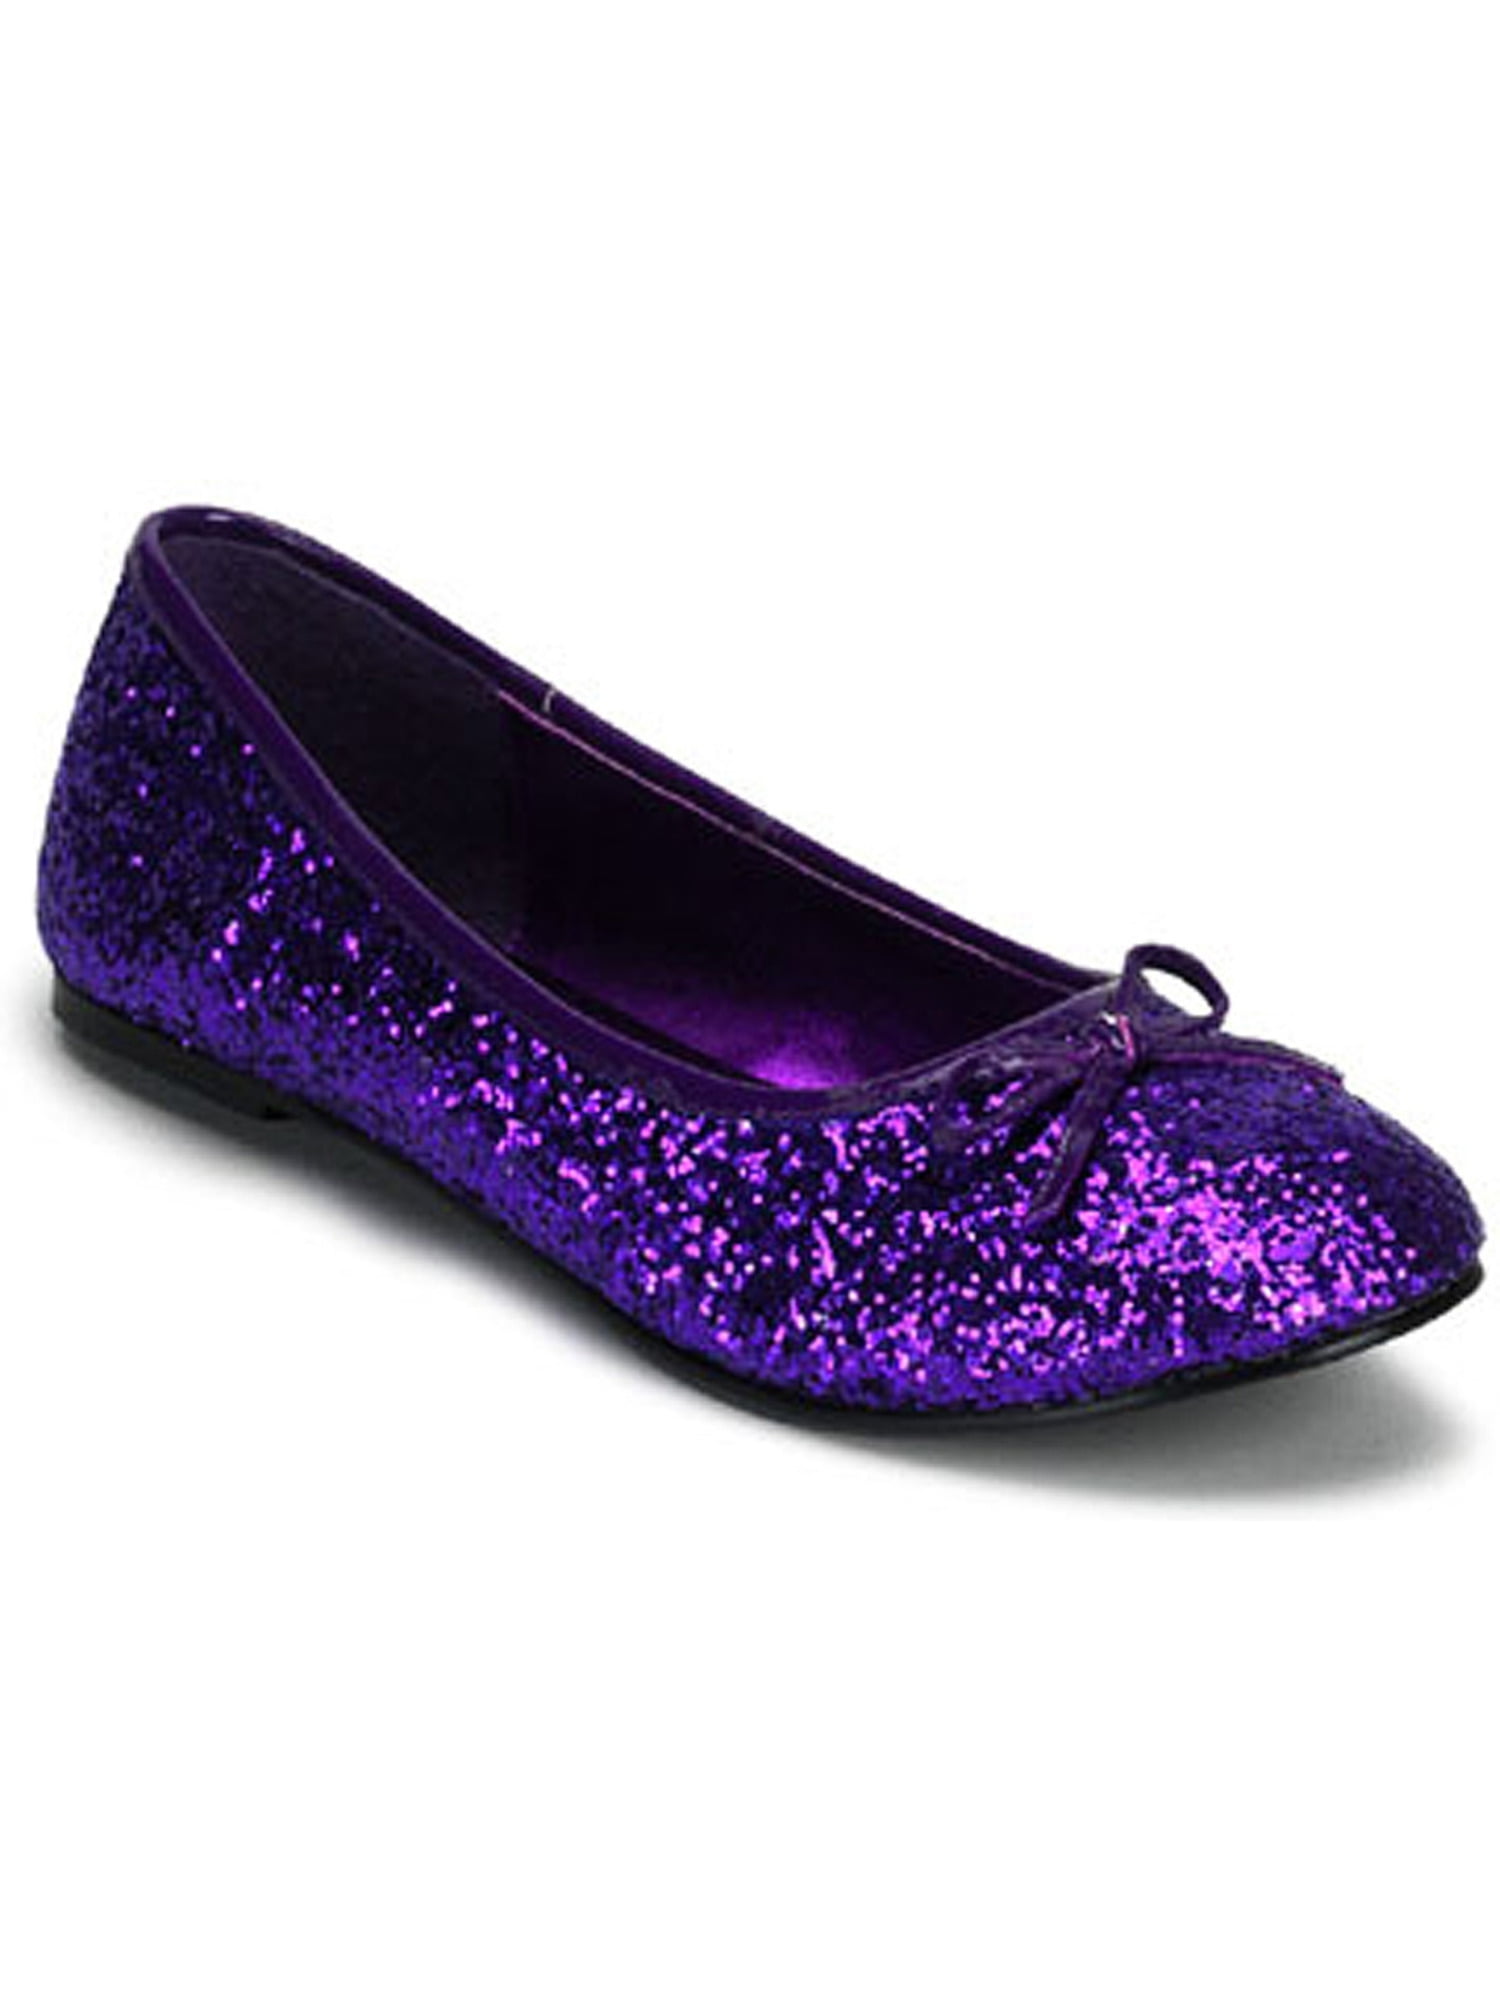 cute purple shoes